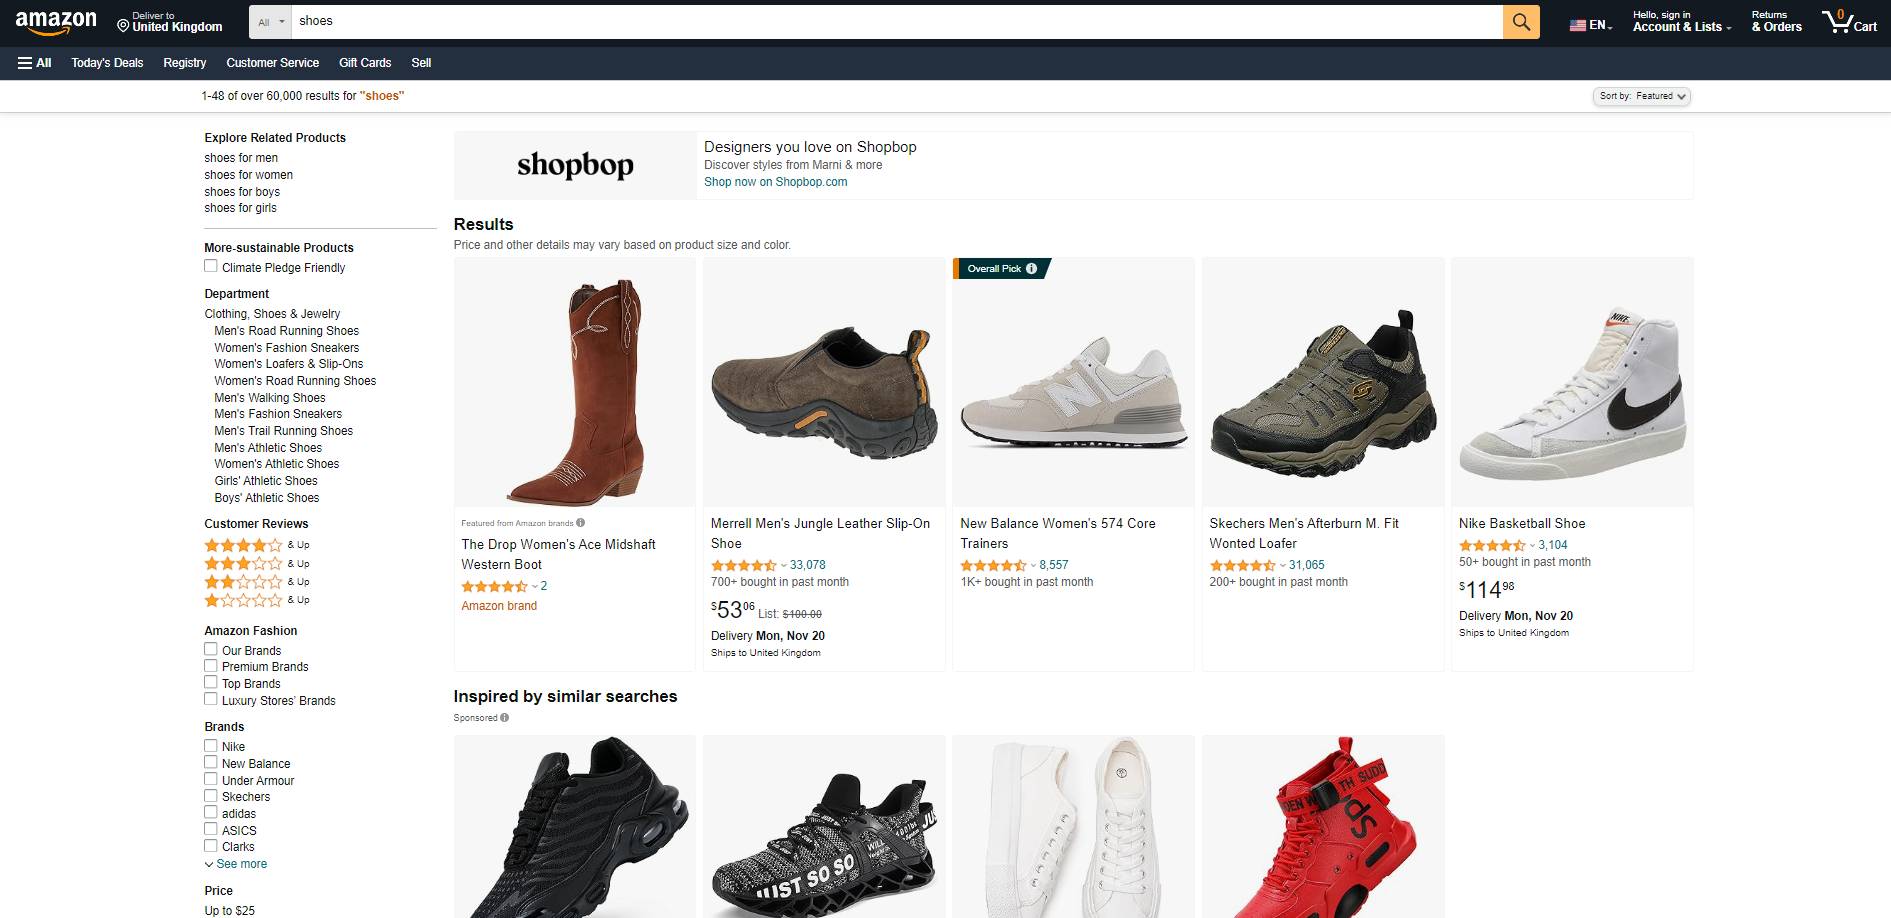 Shoe catalog on Amazon